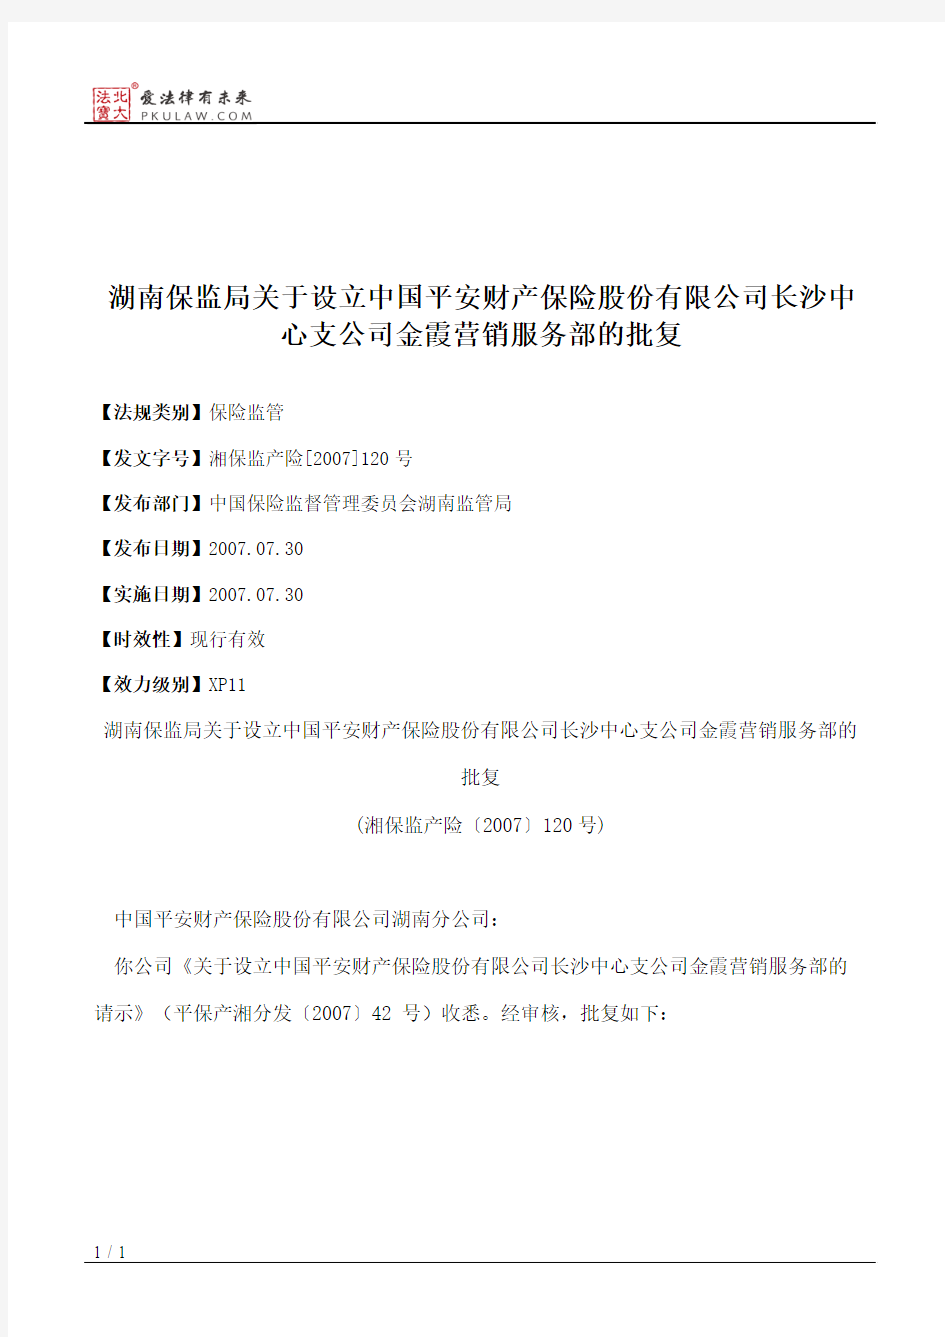 湖南保监局关于设立中国平安财产保险股份有限公司长沙中心支公司